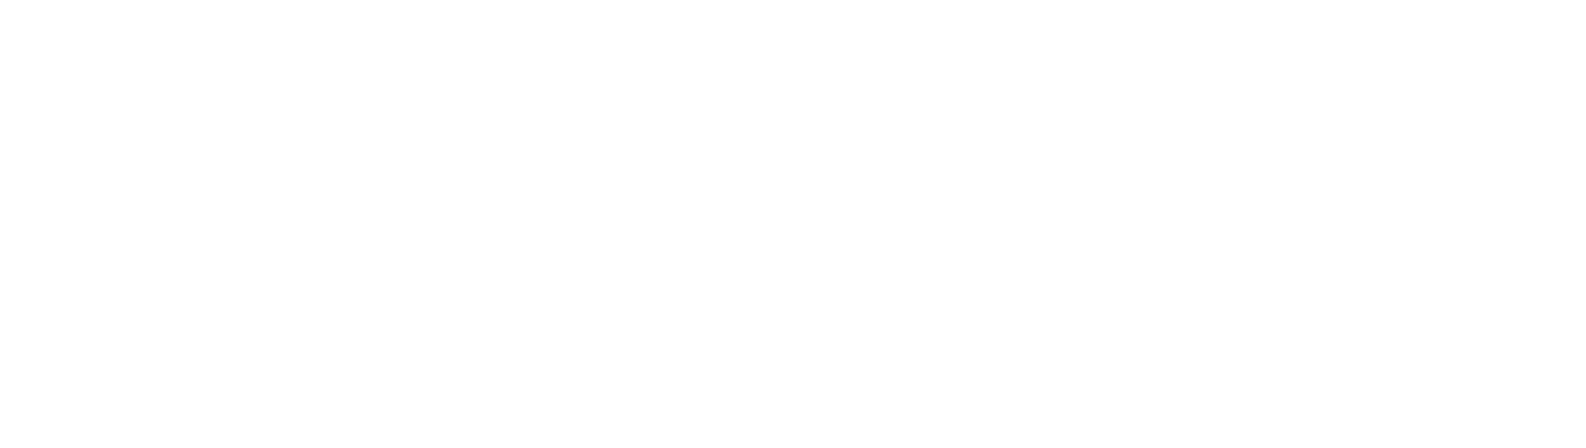 Invitae
 Logo groß für dunkle Hintergründe (transparentes PNG)